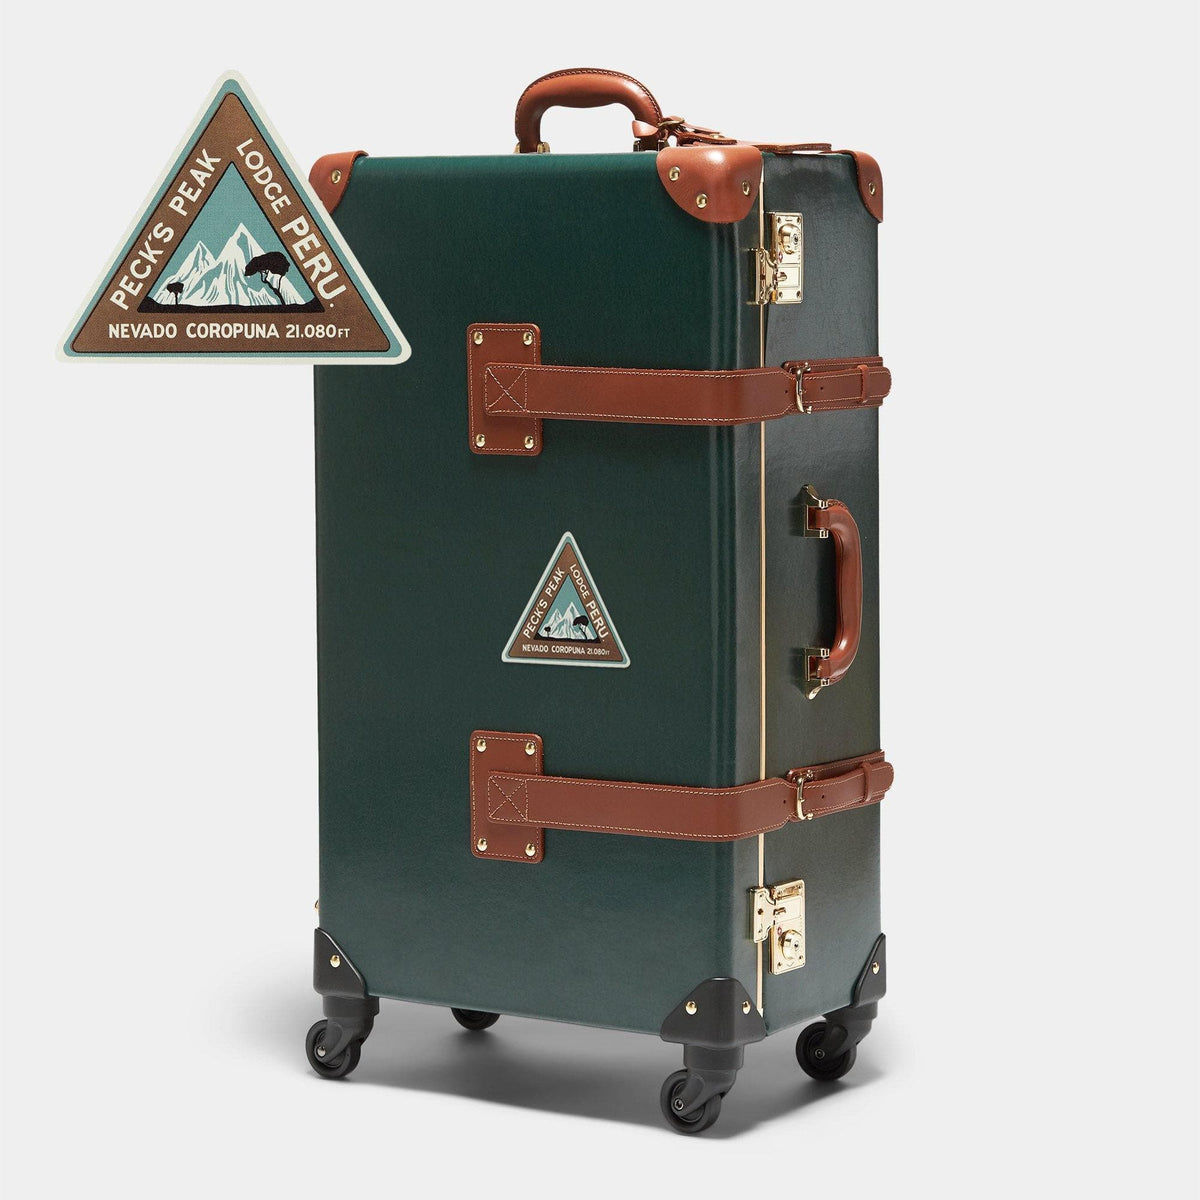 Annie Atkins - Trailblazer Travel Stickers Accessories Steamline Luggage 